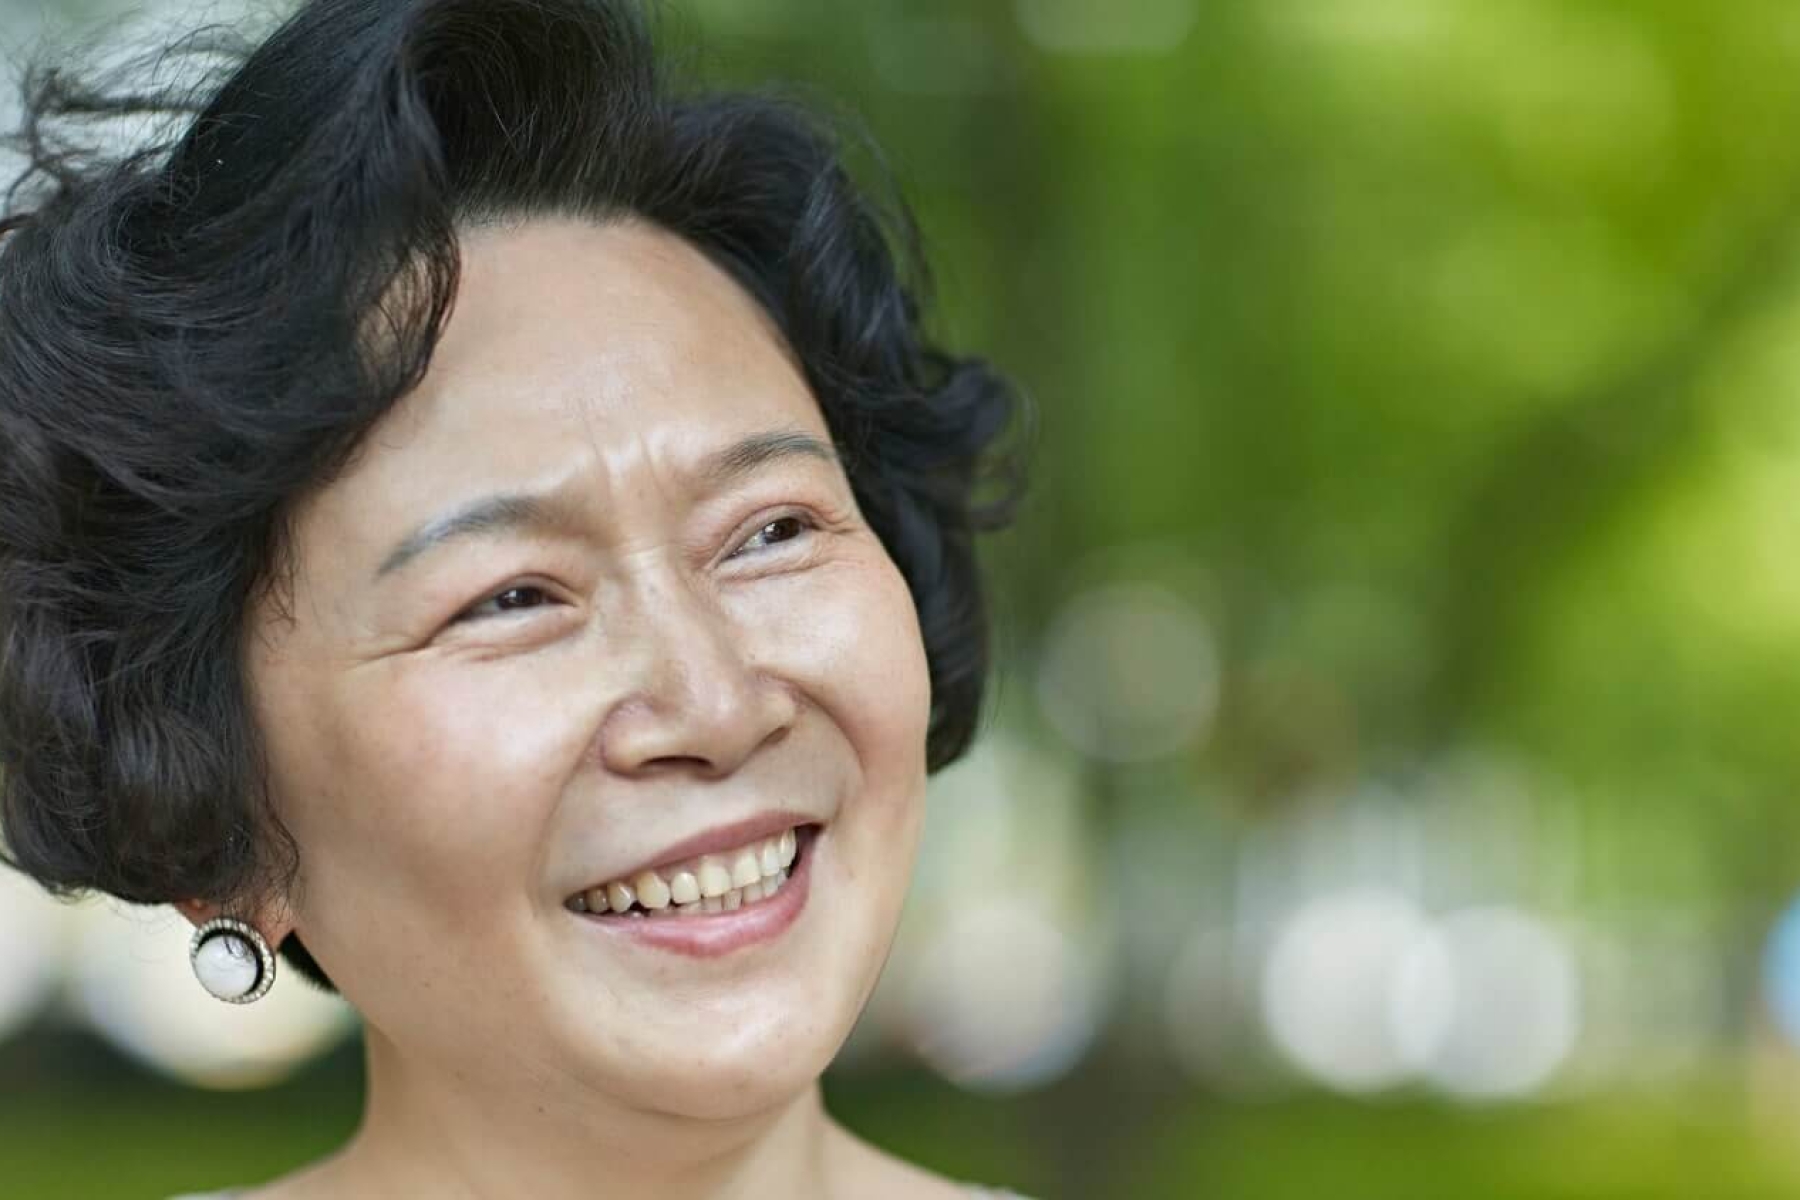 Saya Menolak “Anti-Aging”: Menghargai Kecantikan di Segala Usia